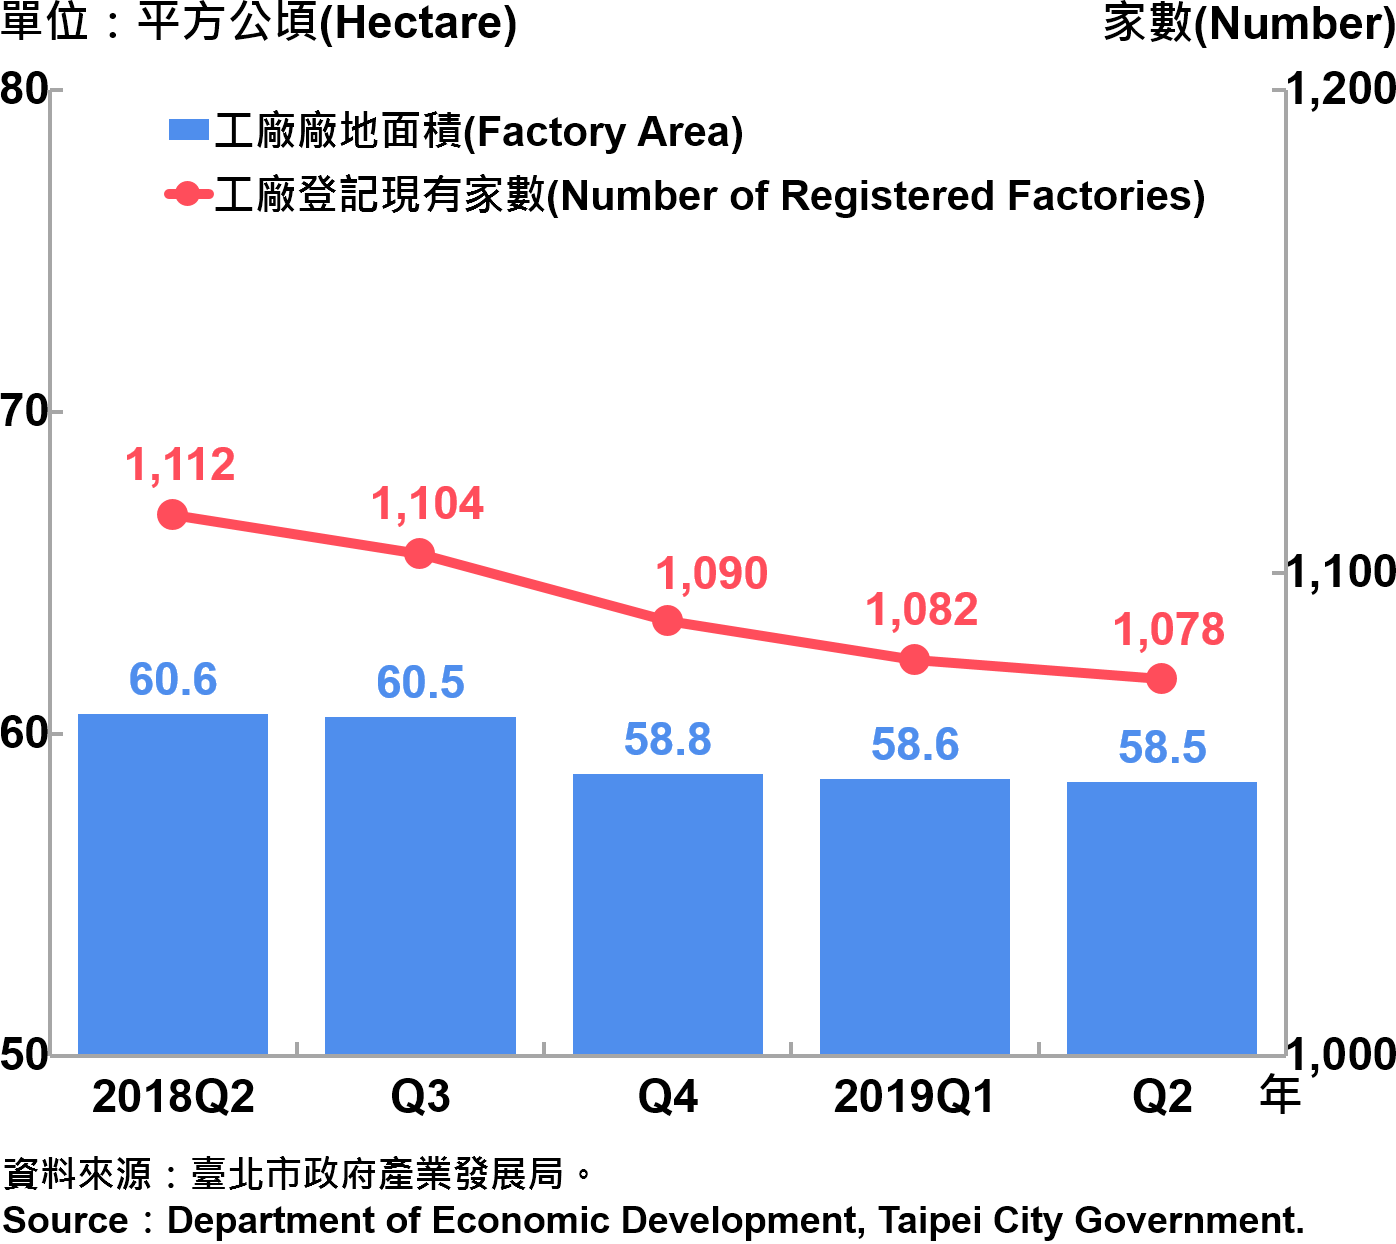 臺北市工廠登記家數及廠地面積—2019Q2 Factory Registration and Factory Area in Taipei City—2019Q2